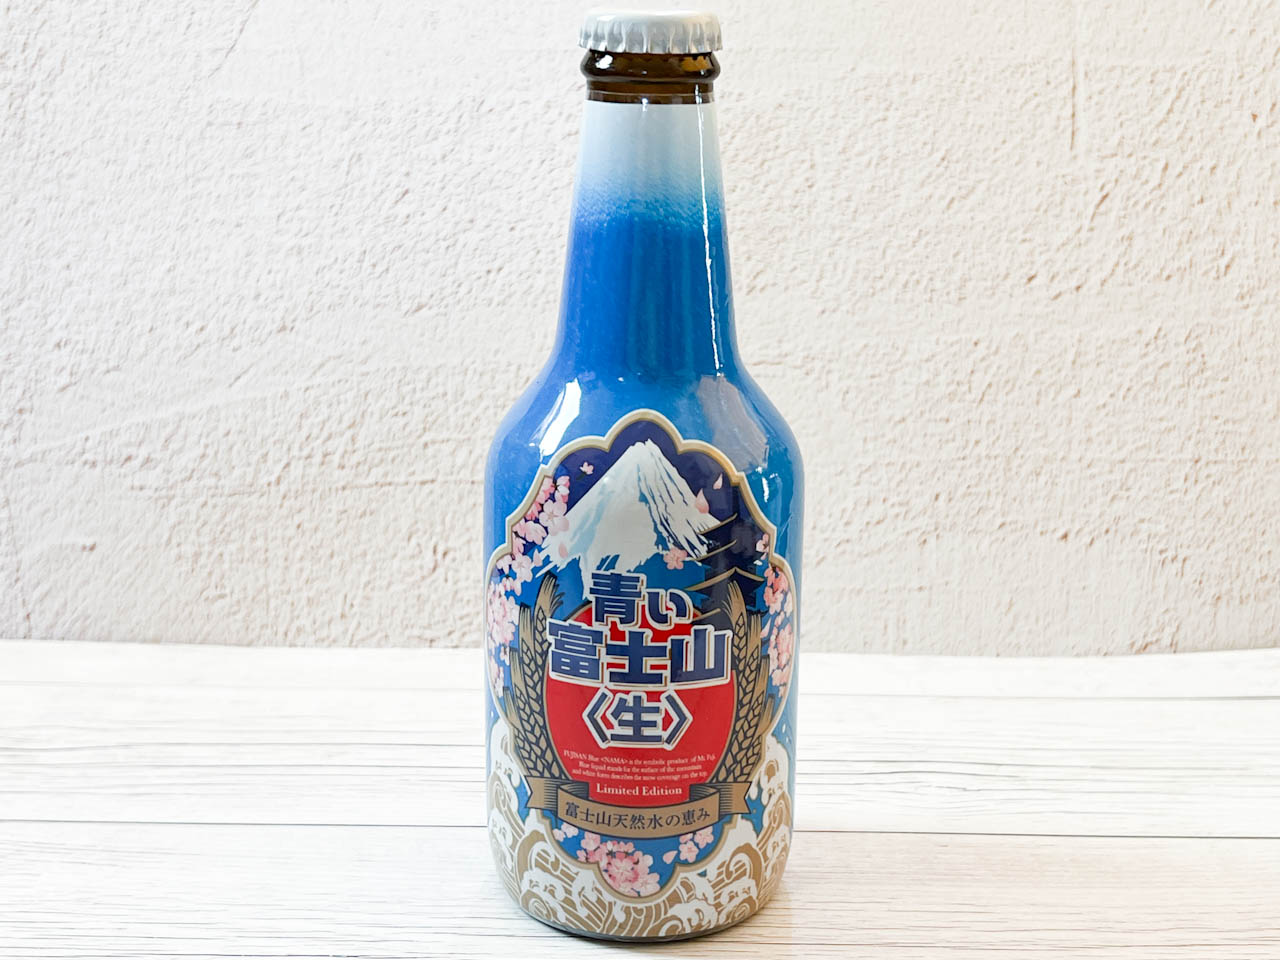 「青い富士山〈生〉」は、富士山の色見と雪を忠実に再現したアルコール飲料